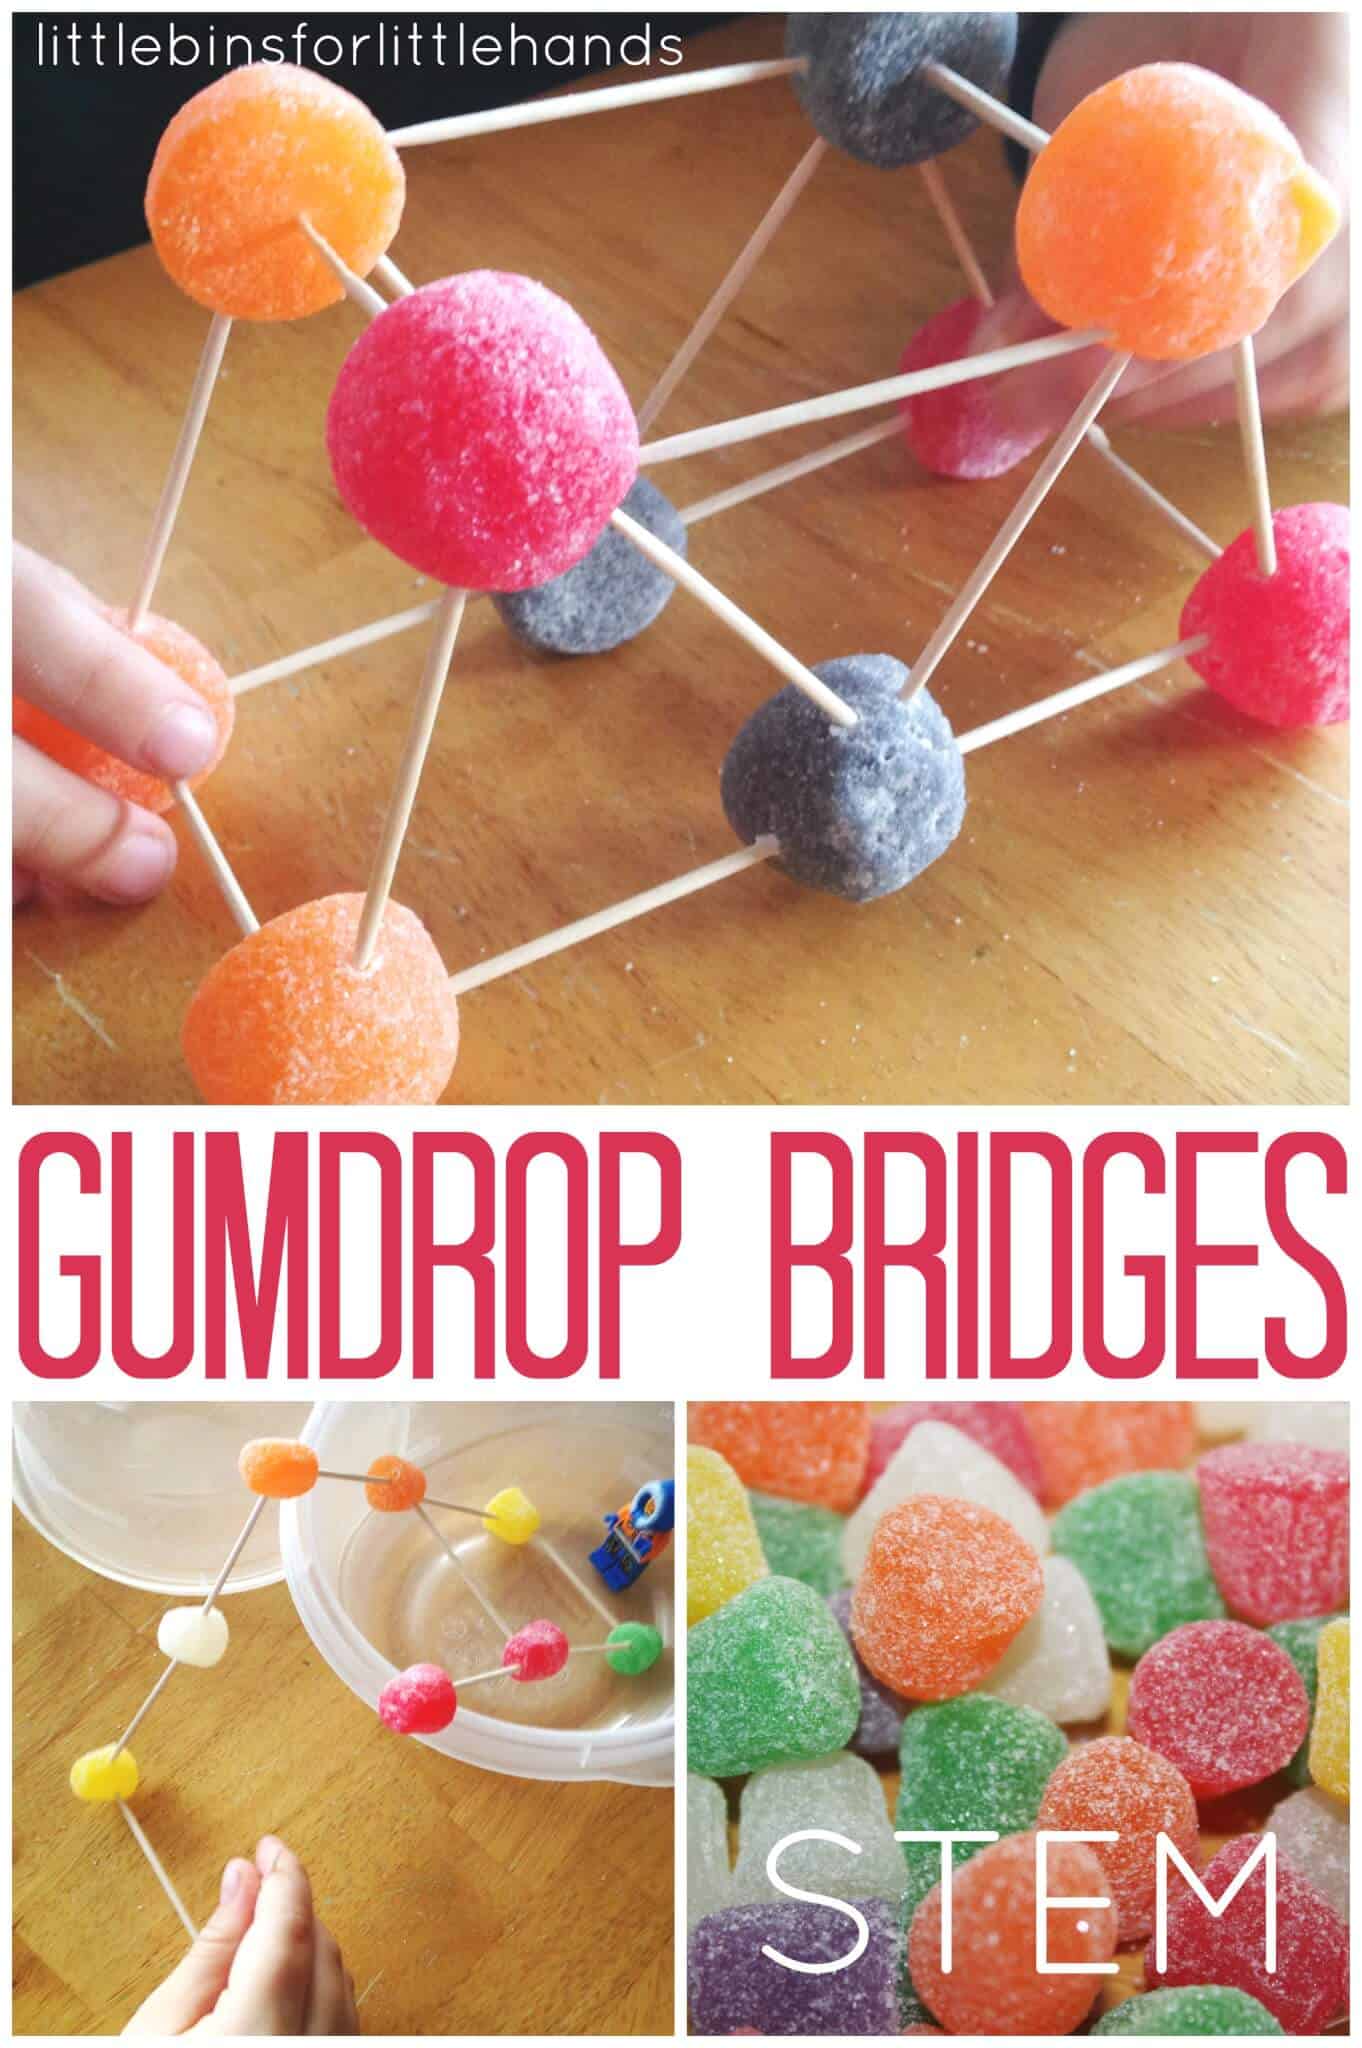 Gumdrop Bridge Building STEM Engineering Activity